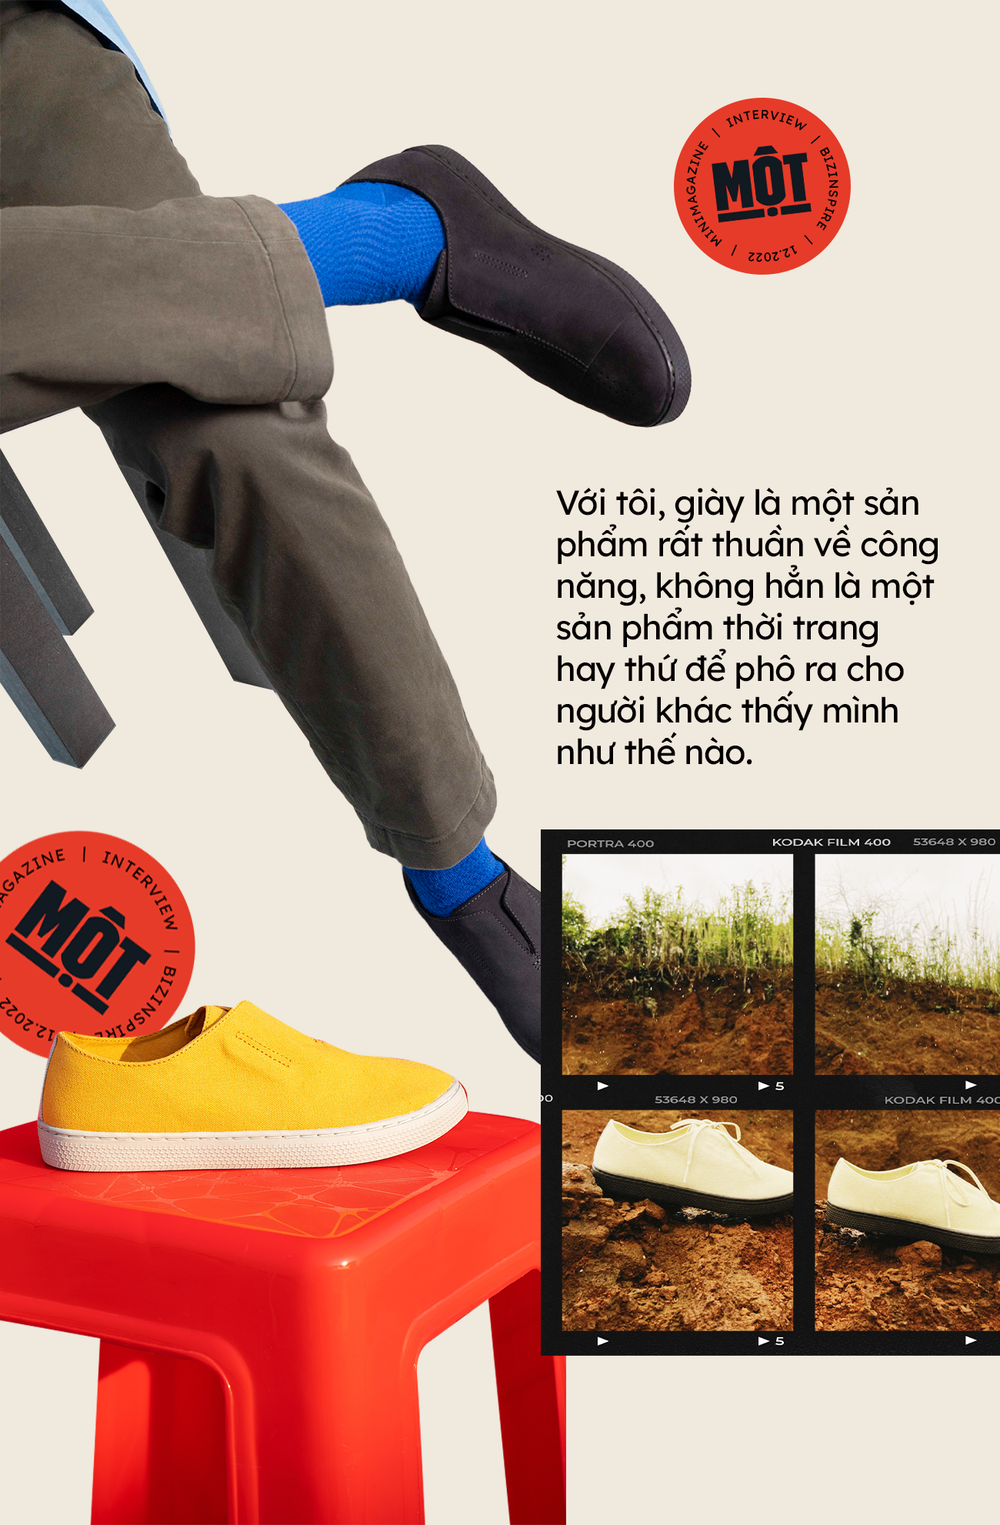 Co-Founder giày Một “made in Việt Nam” kể chuyện 4 năm chỉ sản xuất duy nhất 1 mẫu giày, ai cũng có thể đi vào chân và tuyệt đối không thể sao chép vì… quá khó - Ảnh 3.